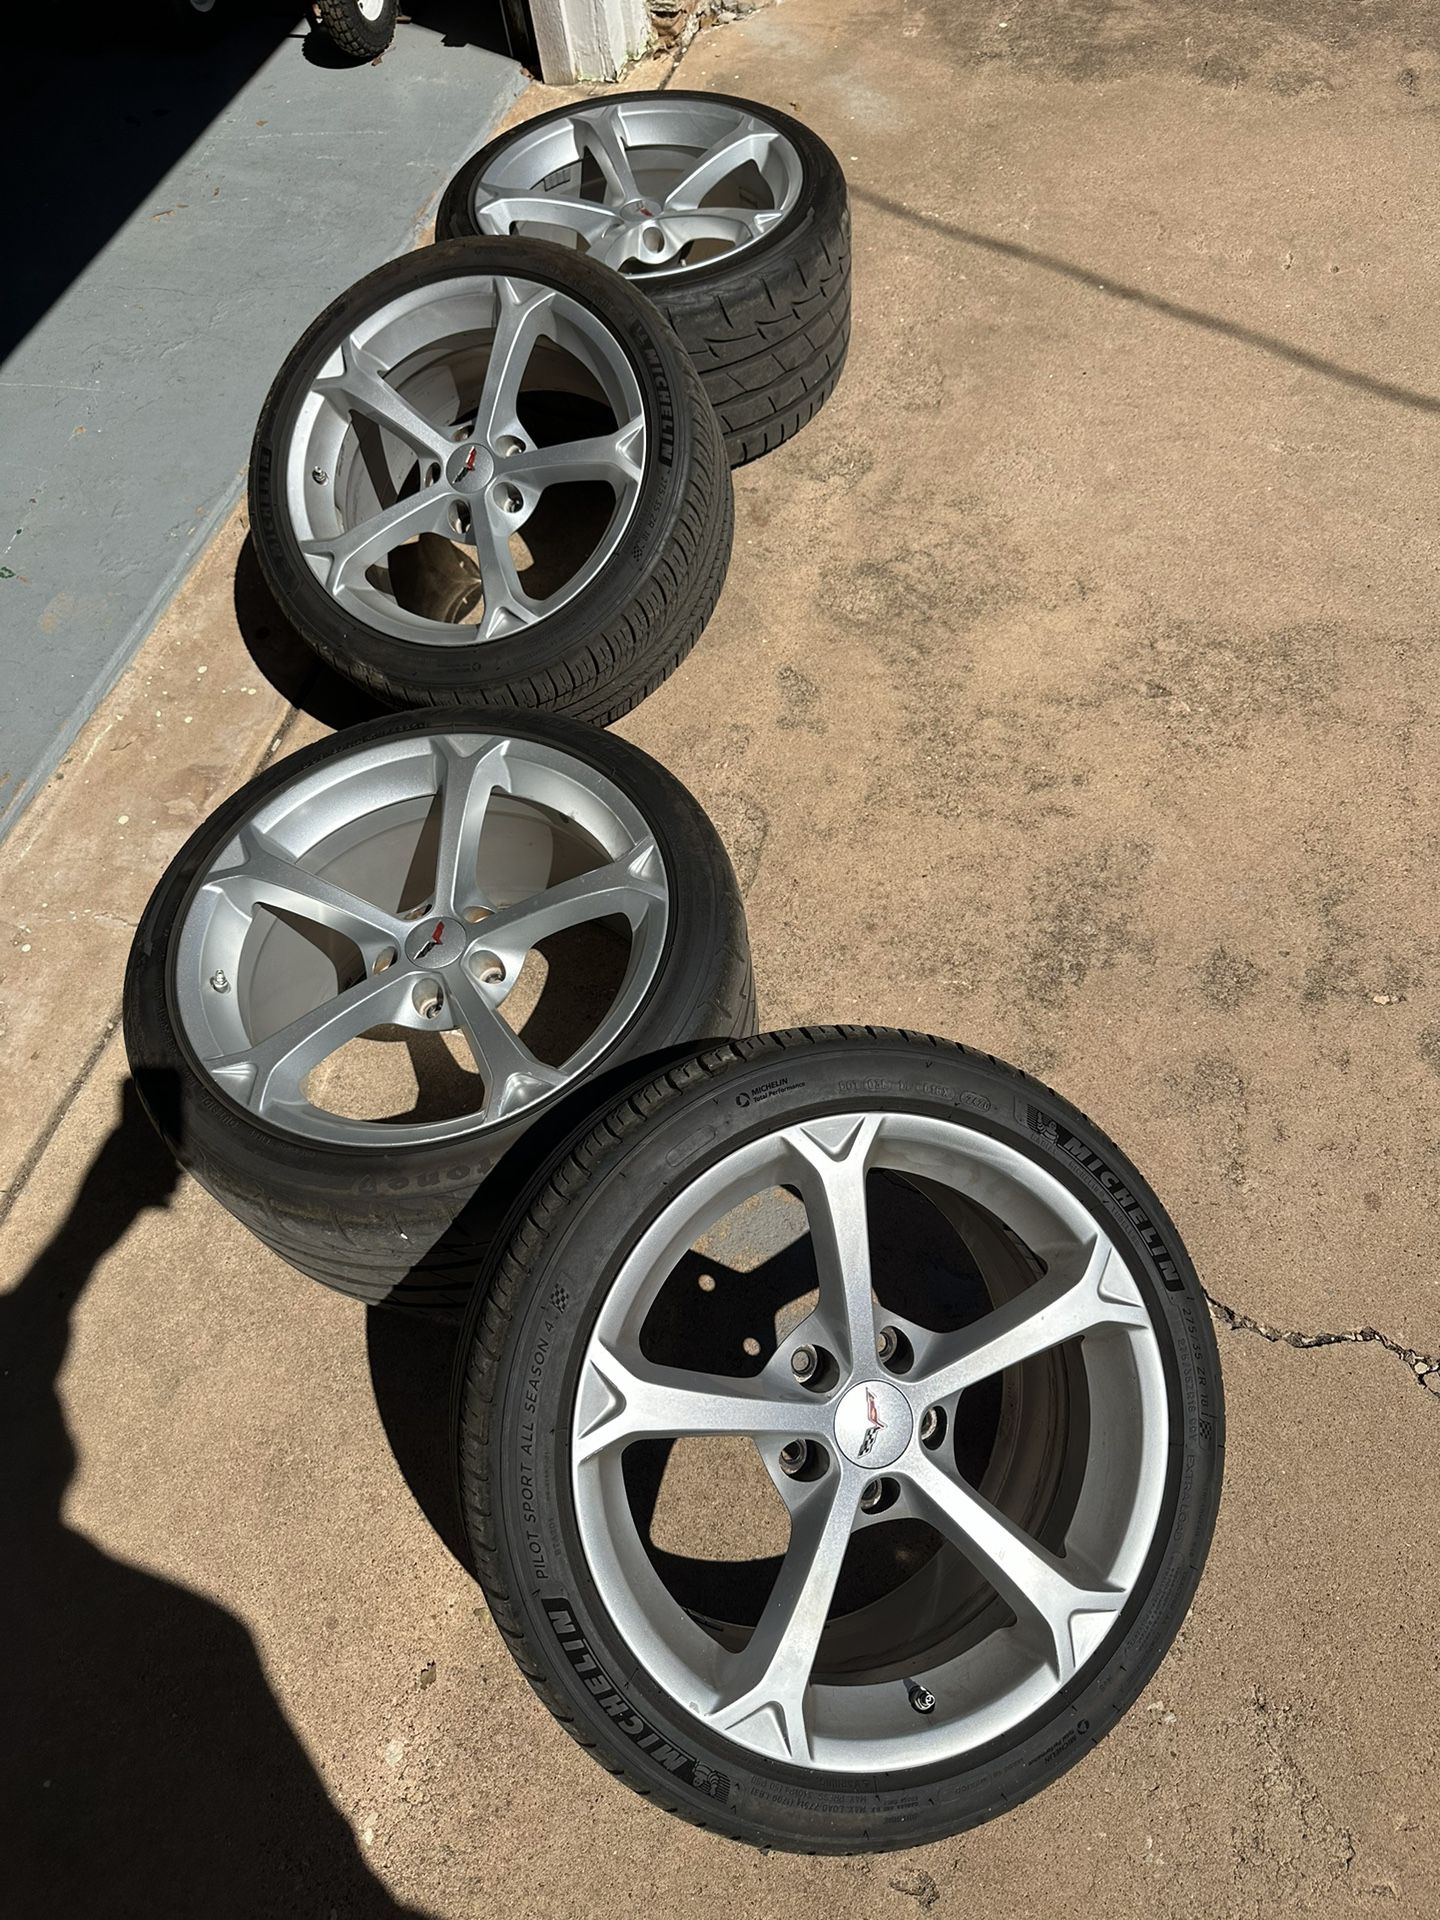 C6 Corvette Grandsport Wheels And Tires